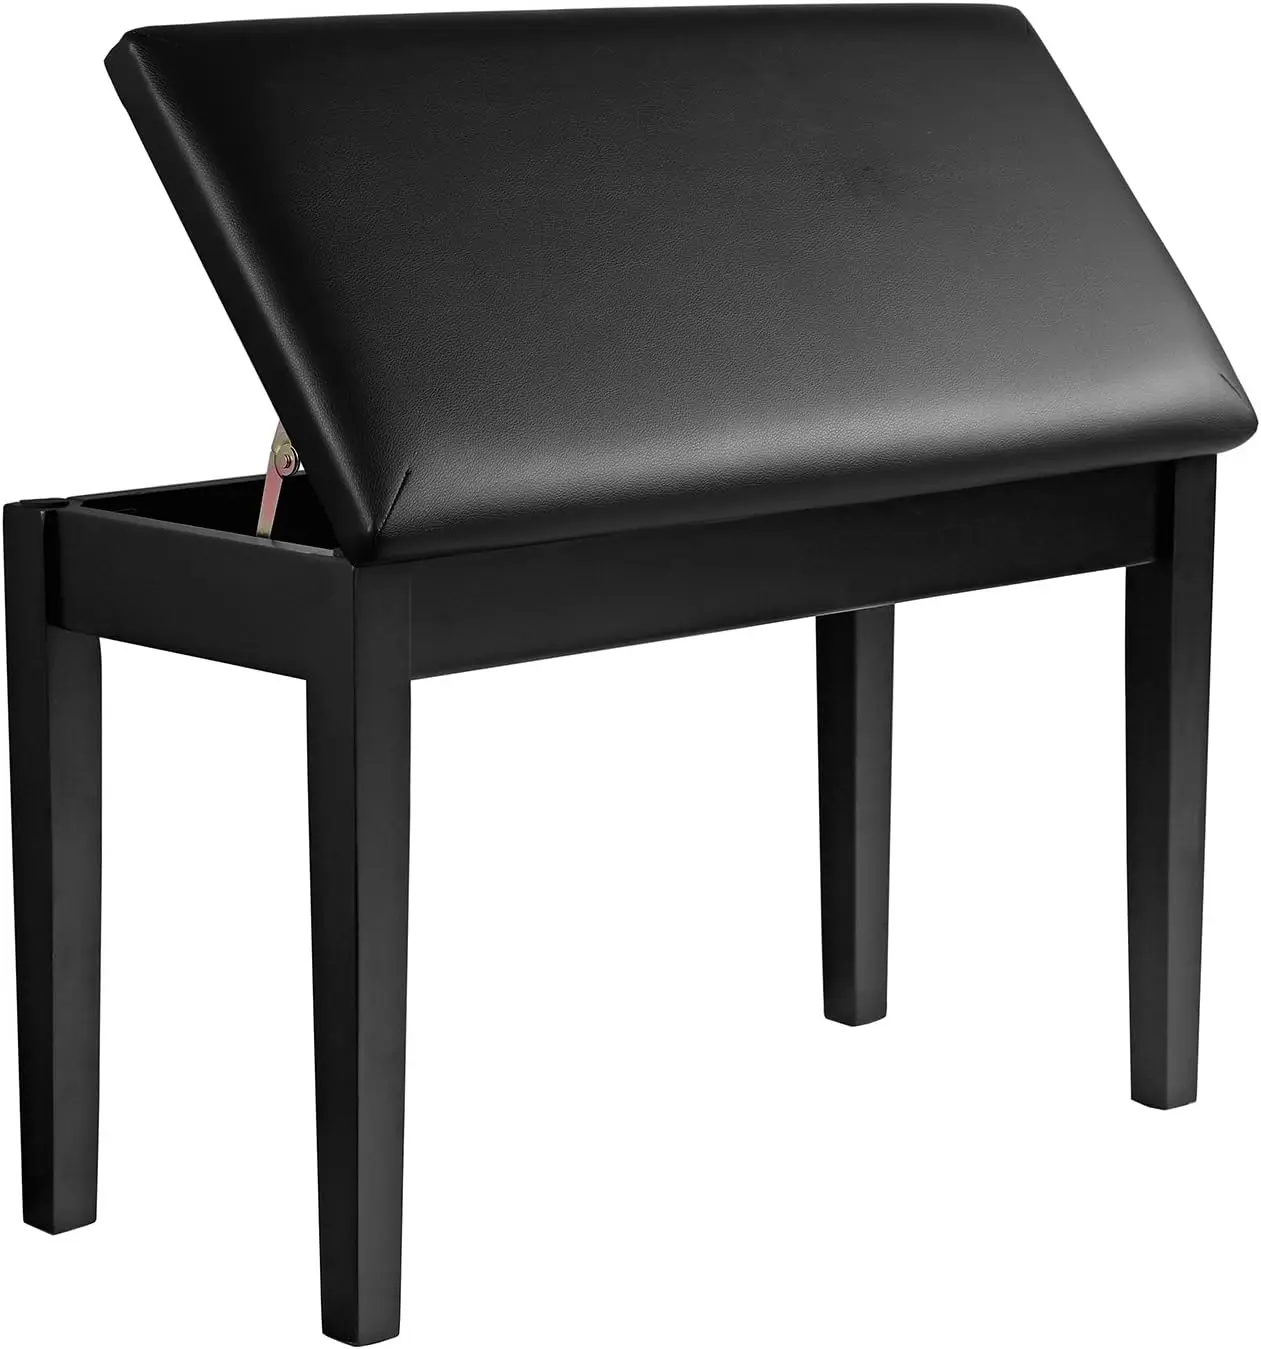 

Duet верстак для пианино с мягкой подушкой и отделением для хранения музыки, сиденье для пианино, черный ULPB75BK